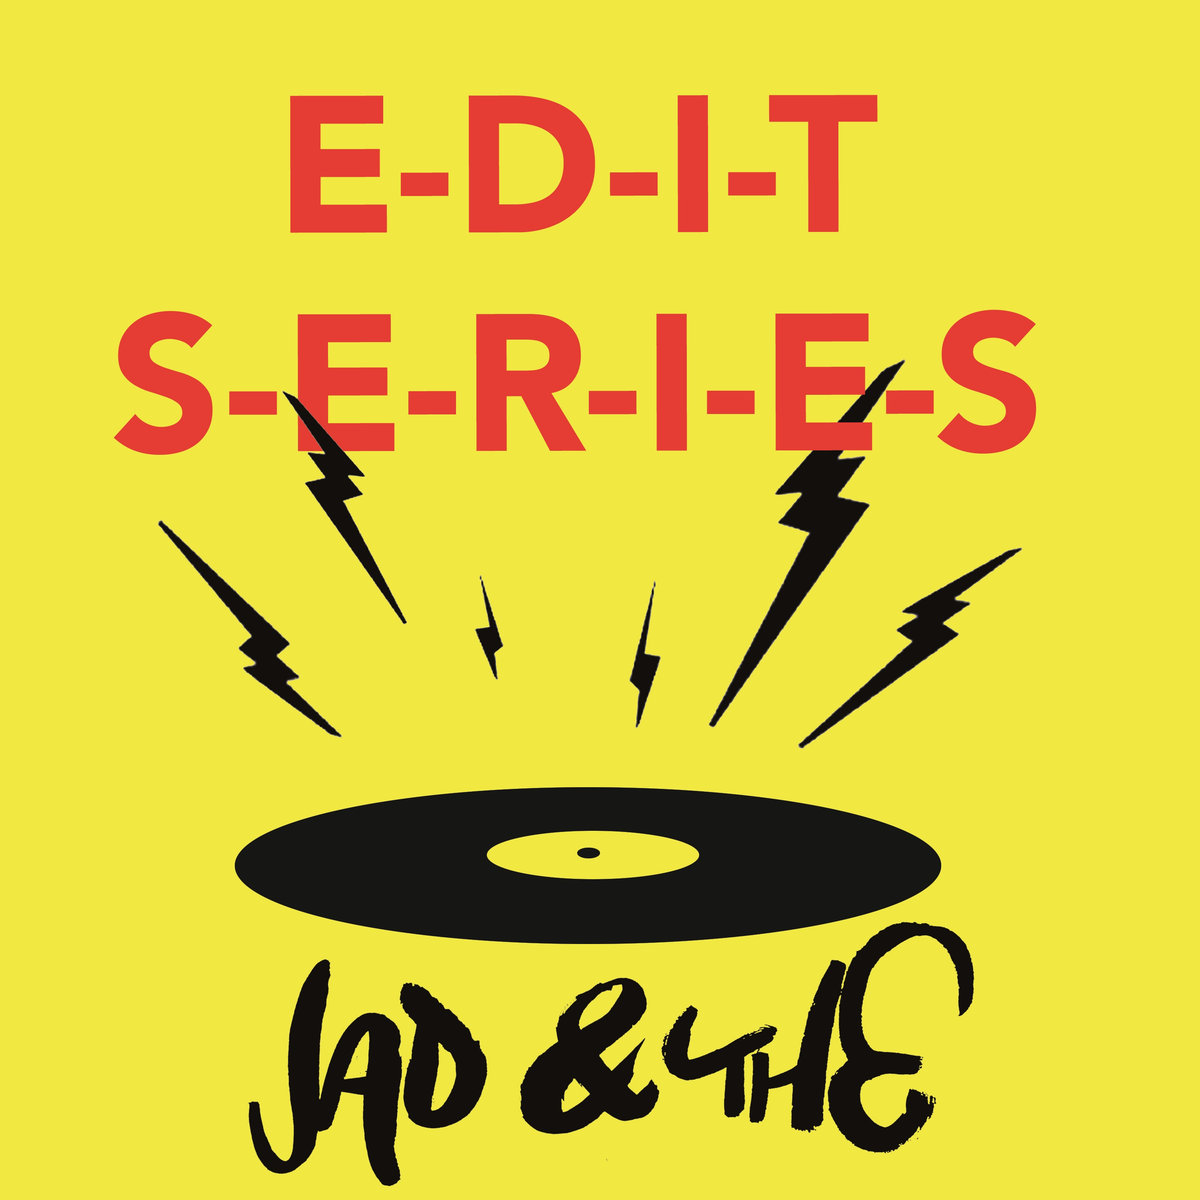 Jad & The - Edit Series / Toy Tonics